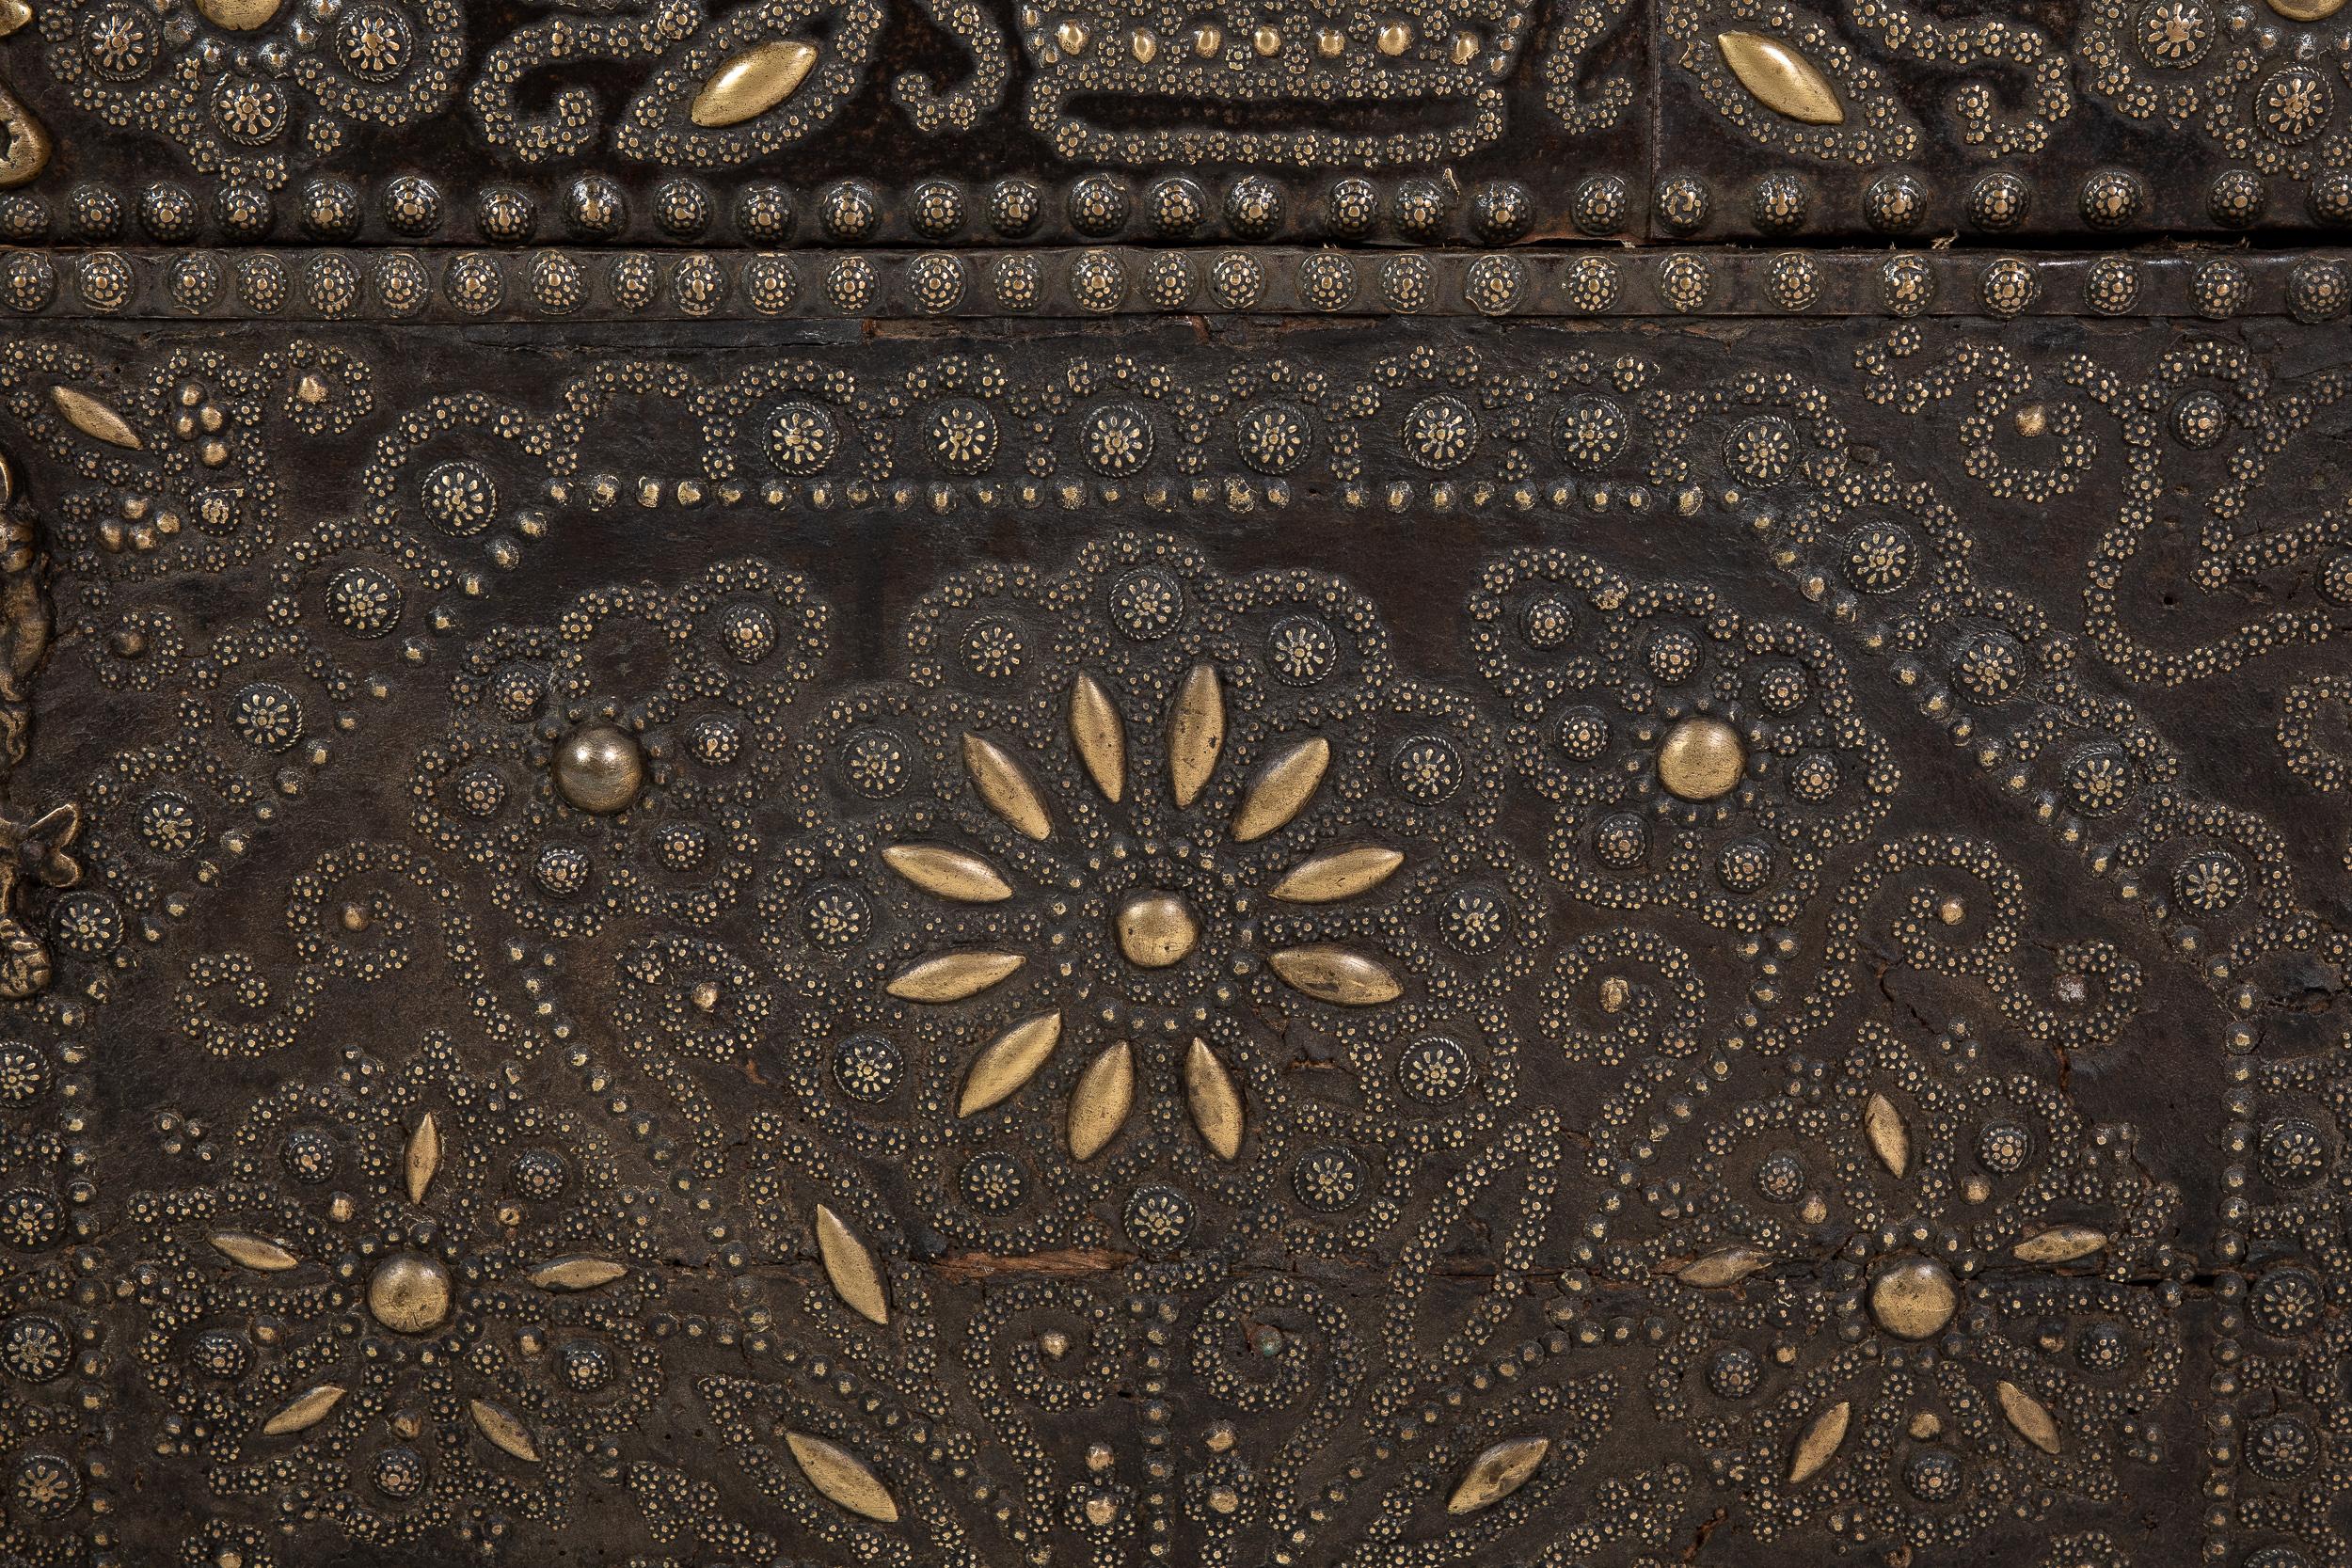 Coffre à clous en laiton français du 17e siècle. Les clous en laiton en relief, de forme florale, créent des motifs merveilleusement décoratifs et complexes qui ajoutent de l'intérêt et un beau contraste. Le plateau est légèrement incurvé et